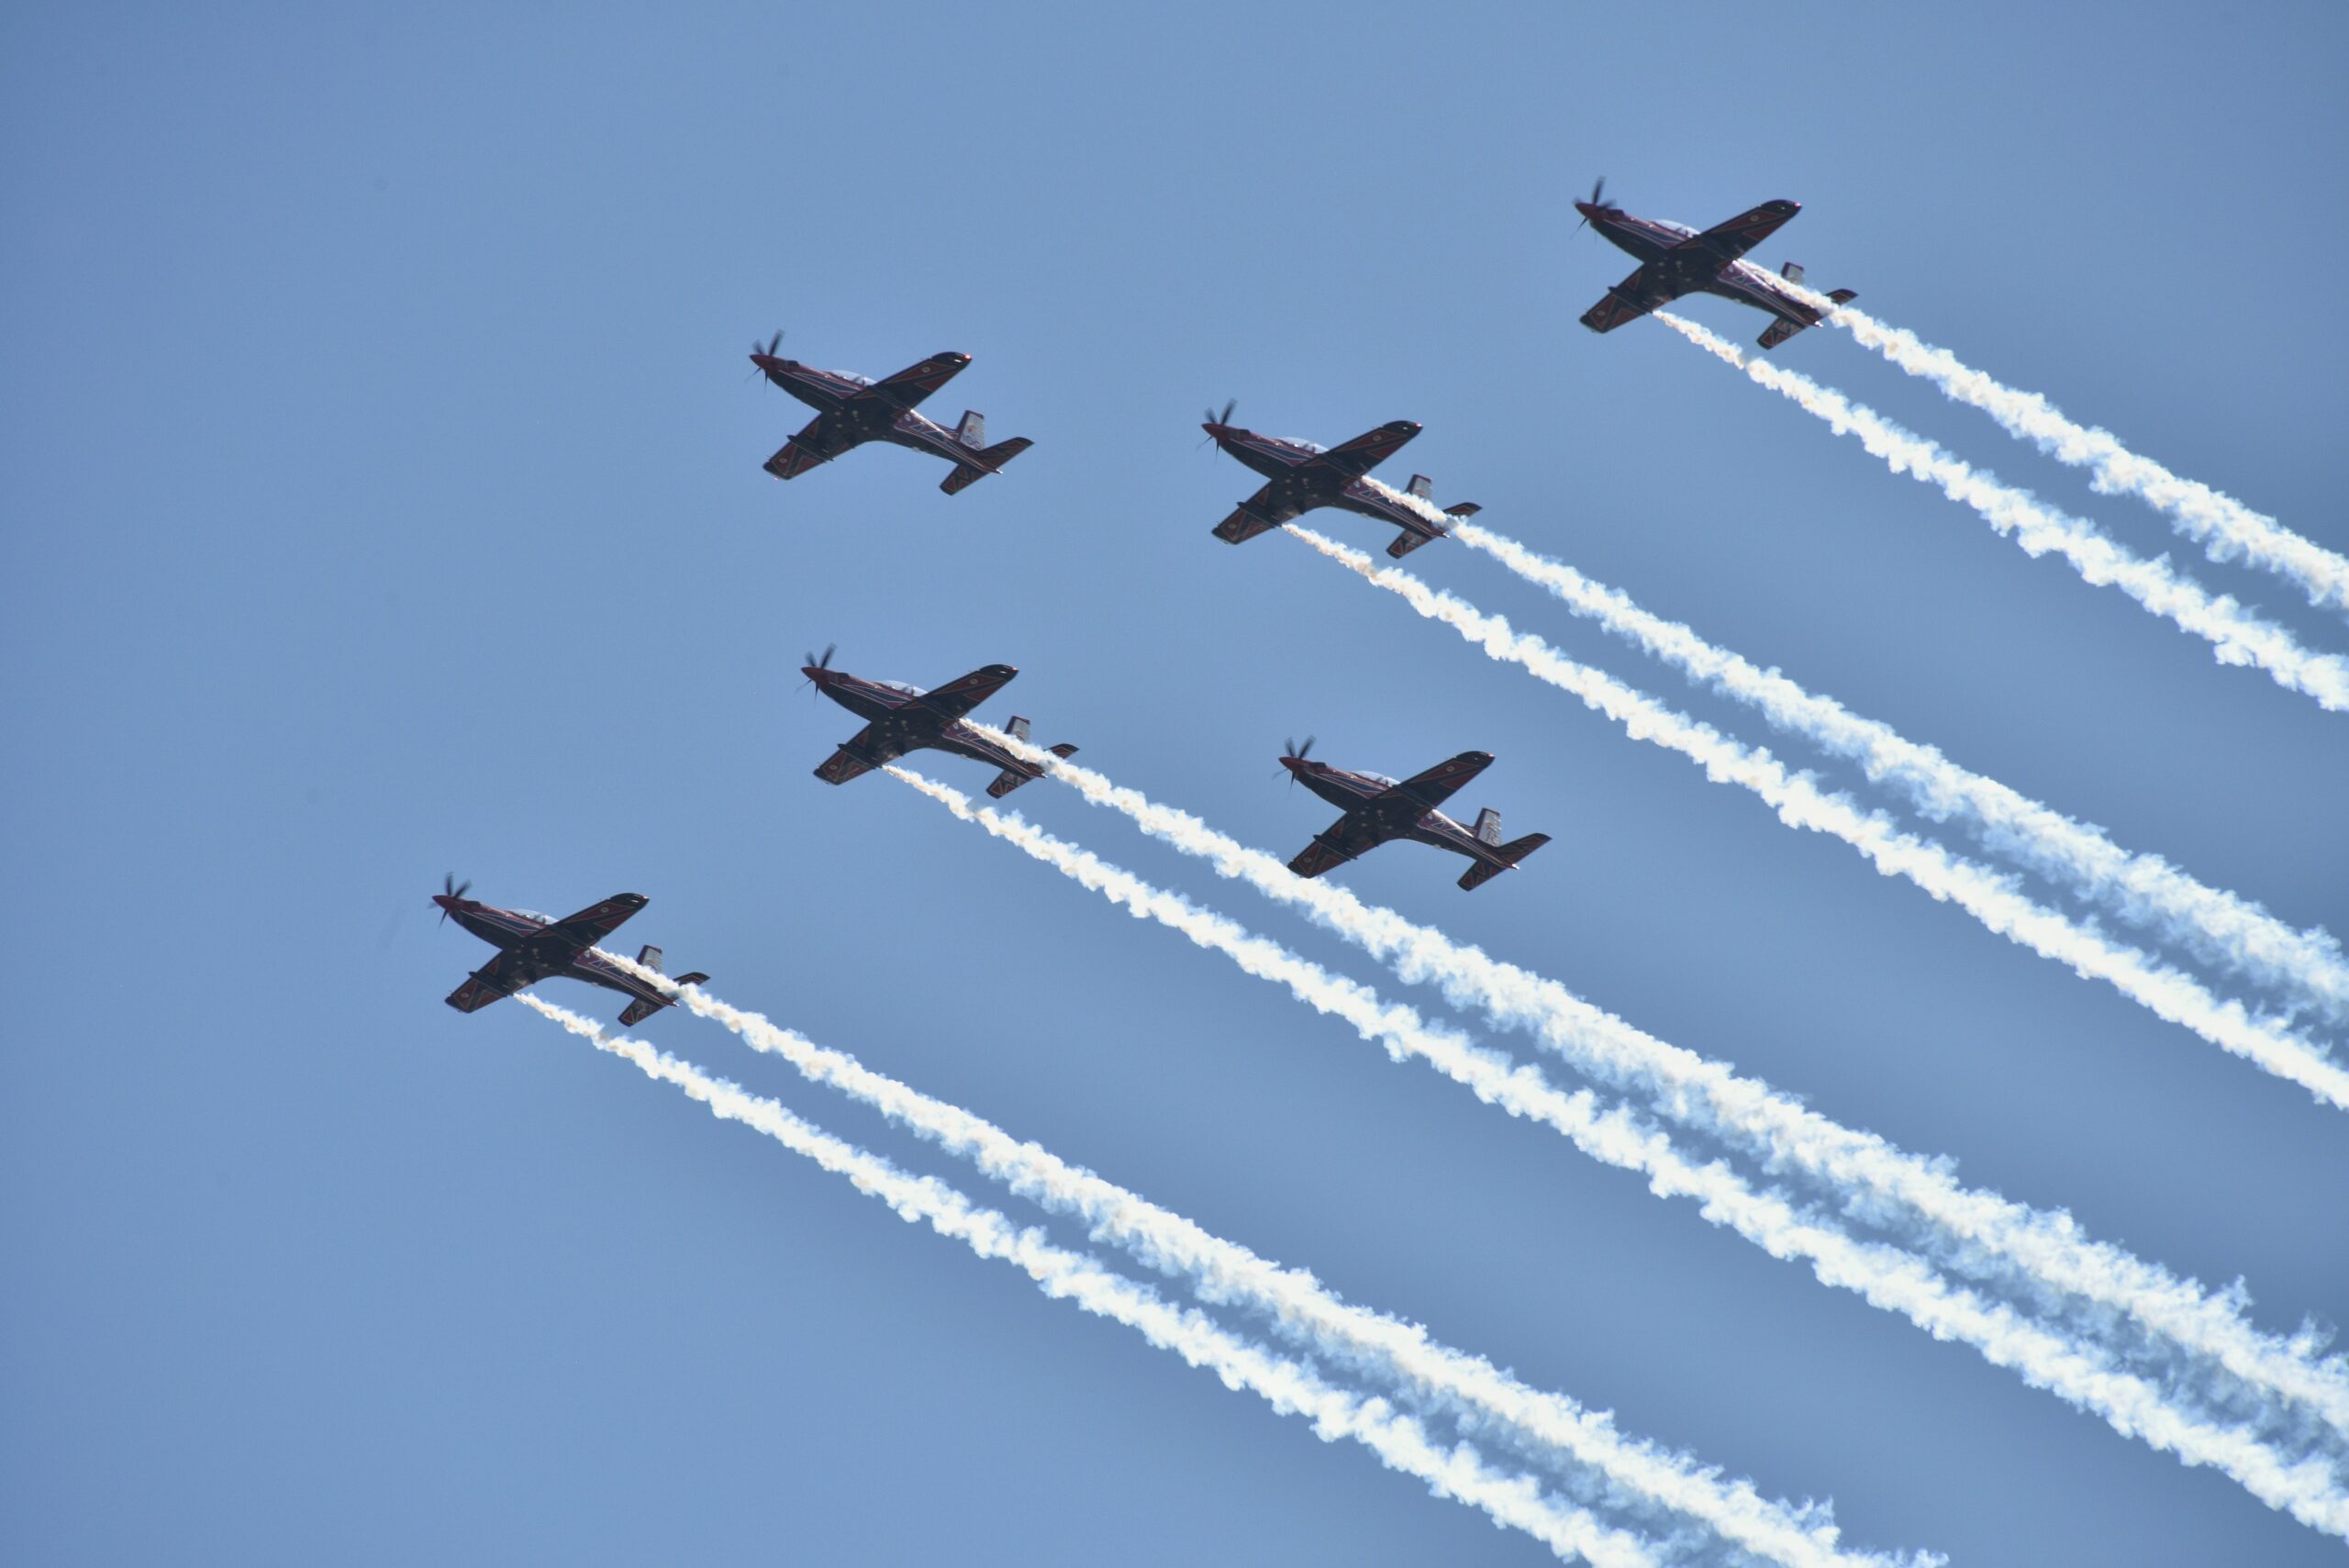 royal australian air force s aerobatic display tea 2022 02 18 02 27 49 utc 1